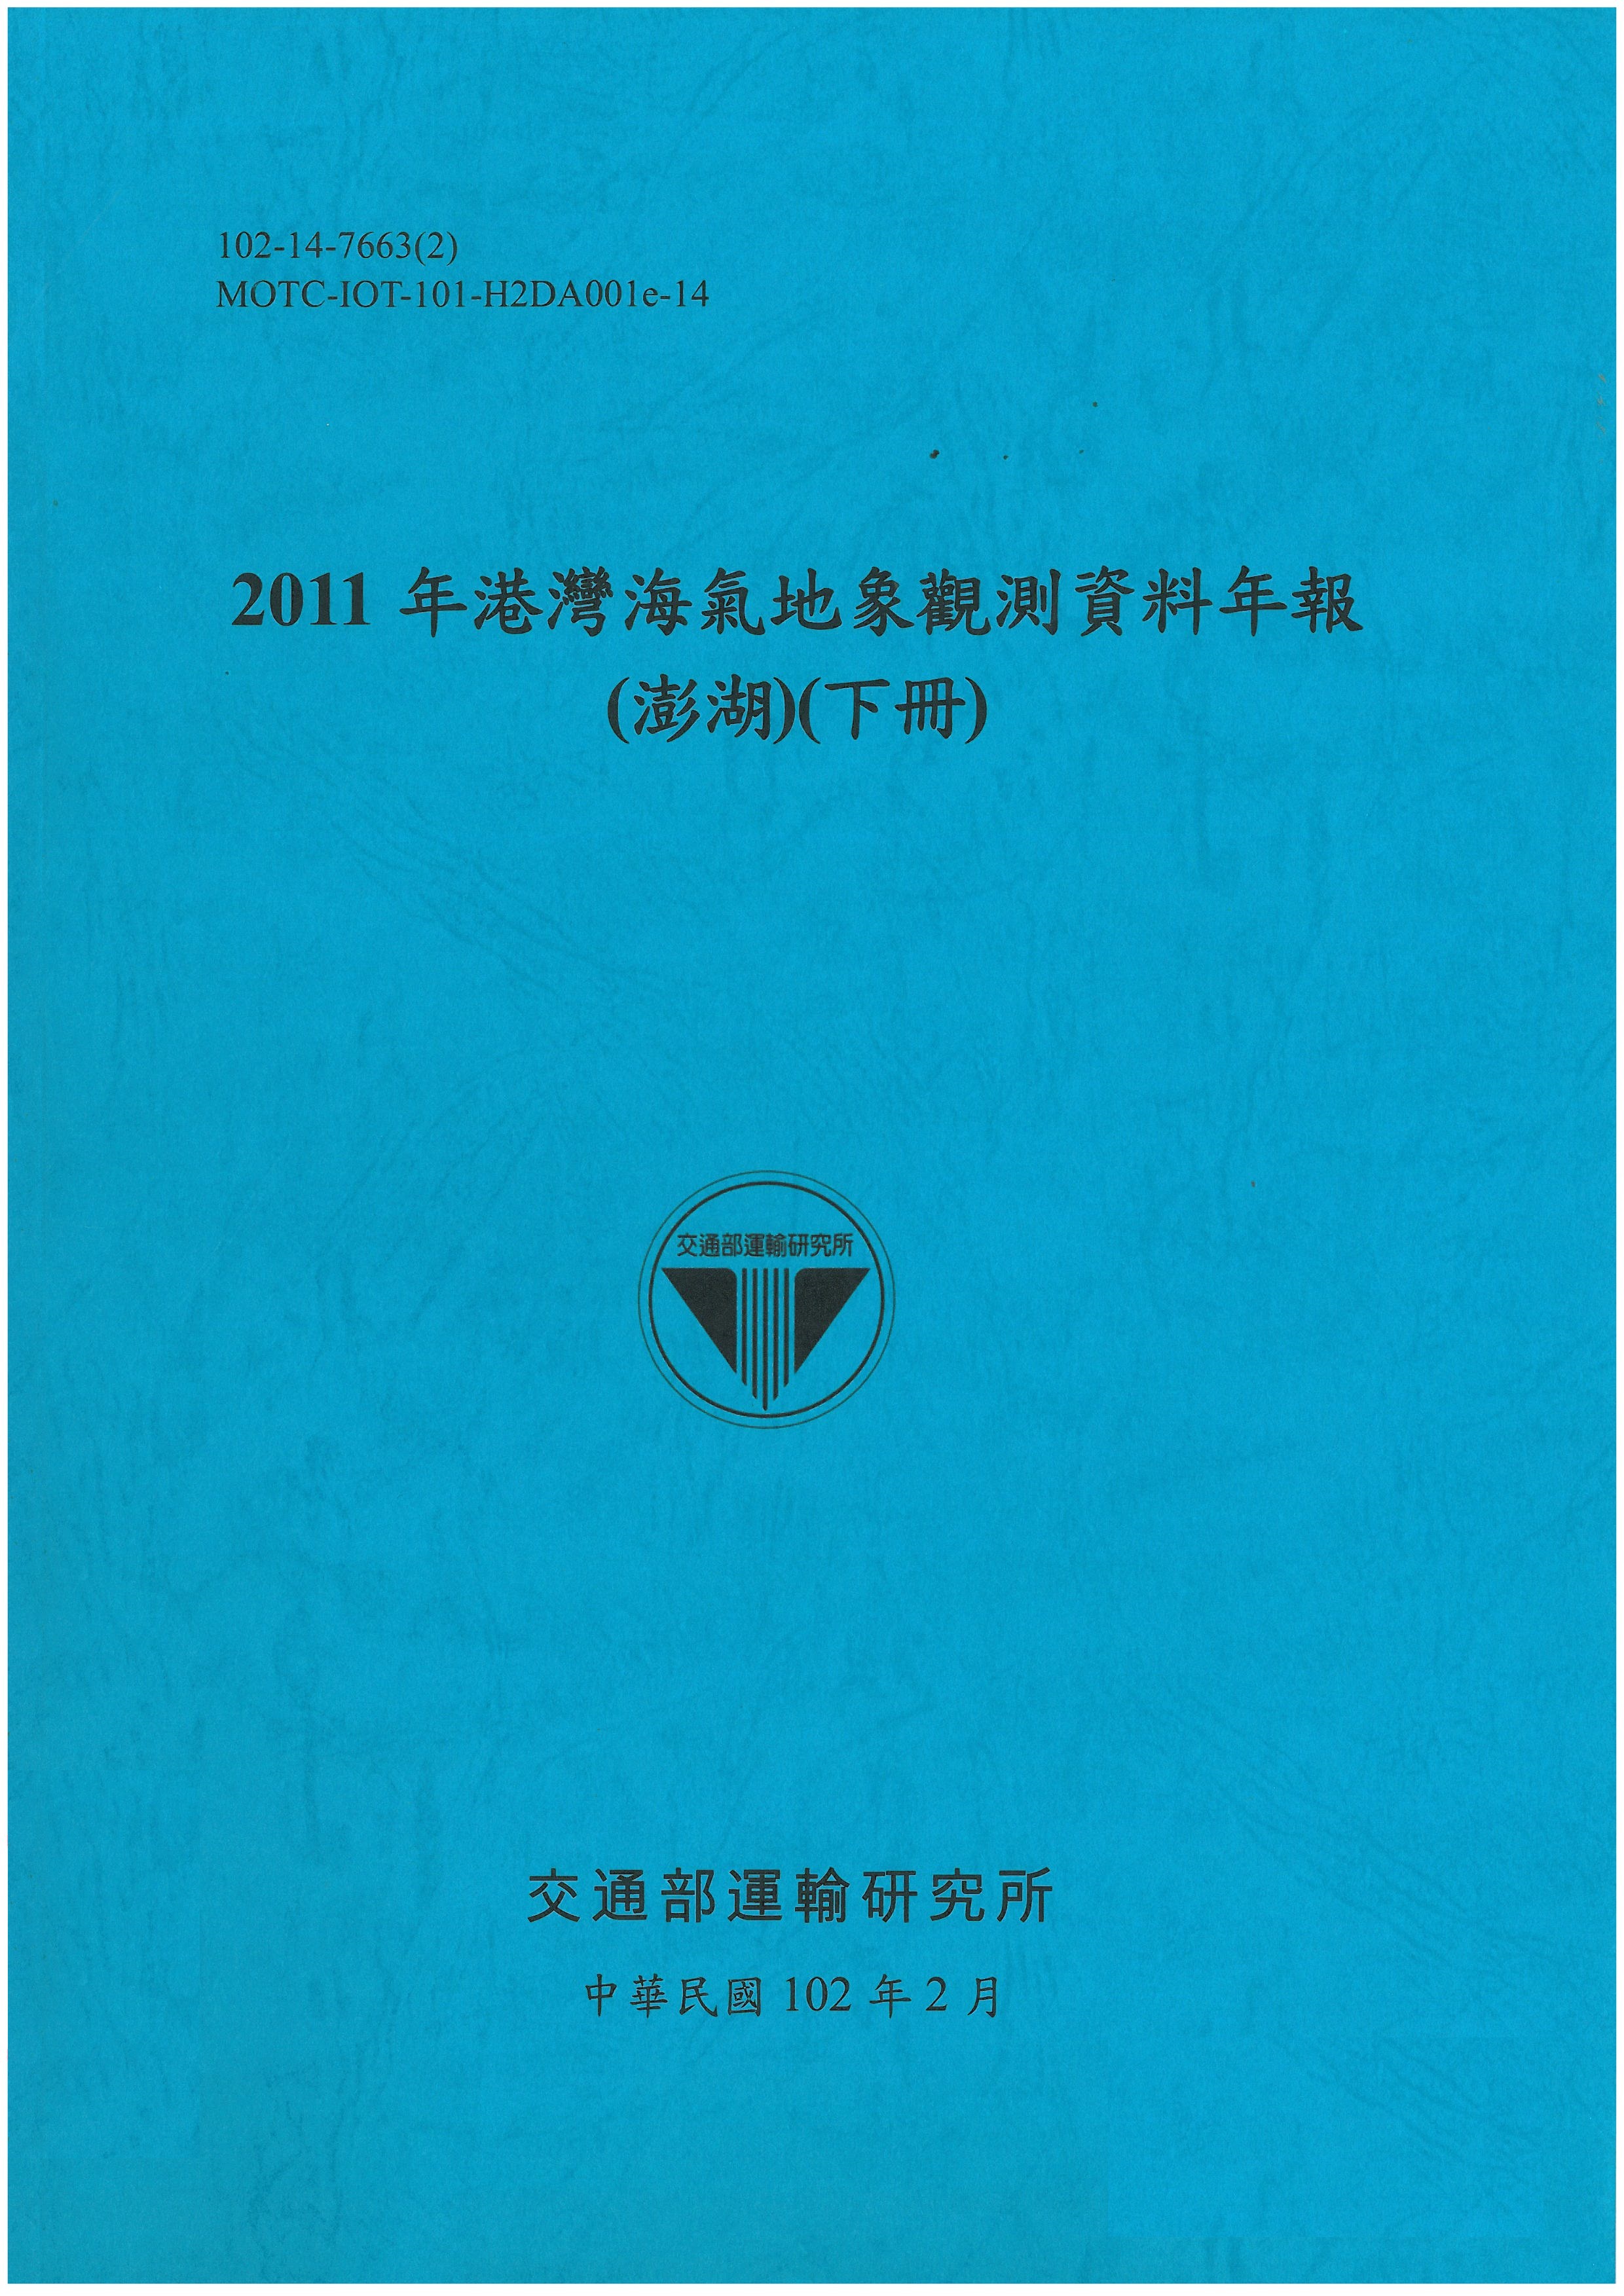 2011年港灣海氣地象觀測資料年報(澎湖)(下冊)